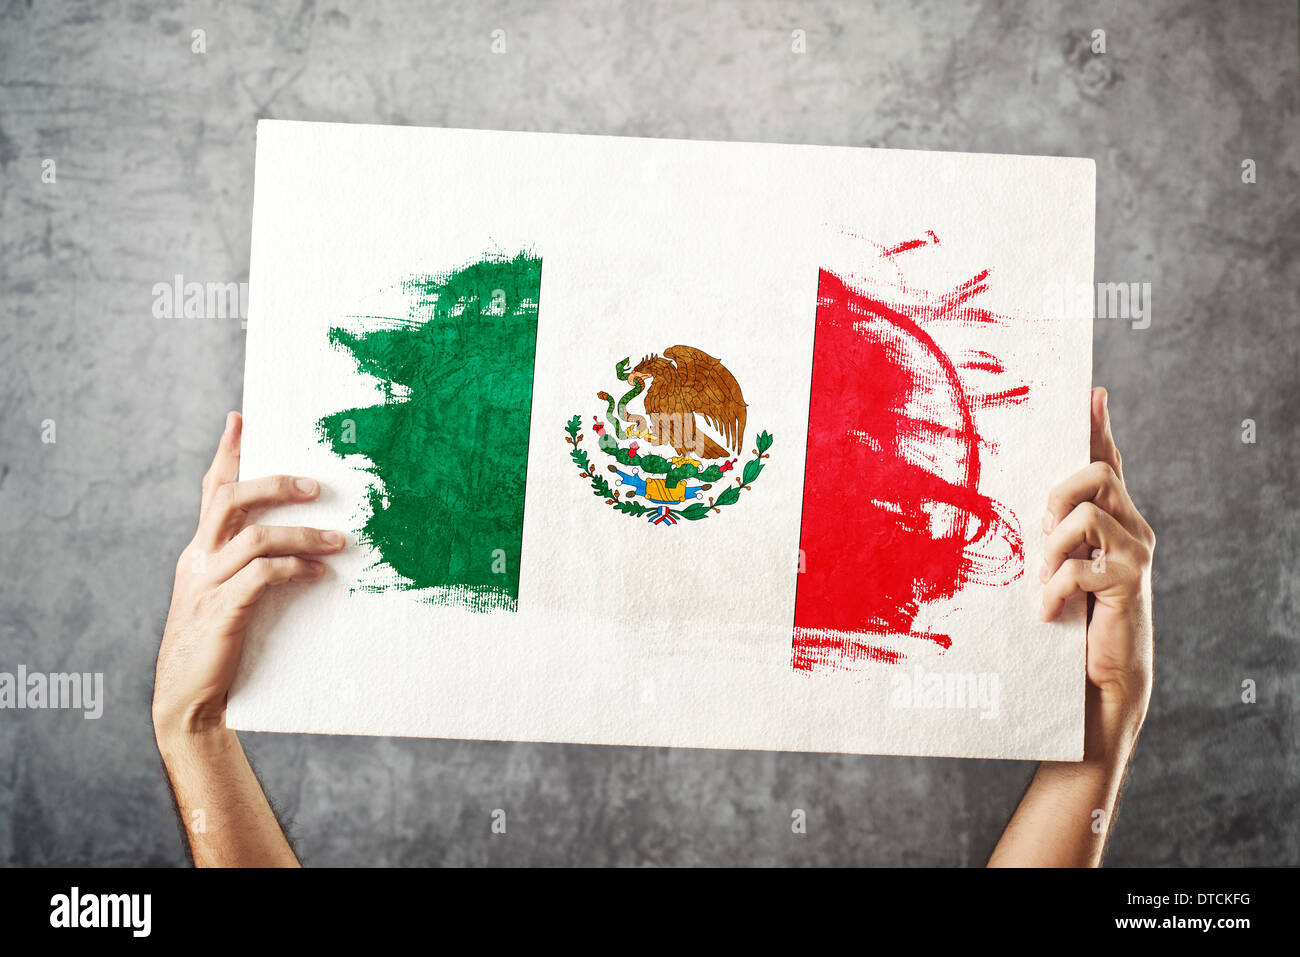 Mexiko-Flagge. Mann hält Banner mit mexikanischen Flagge. Nationalmannschaft, Patriotismus Konzept zu unterstützen. Stockfoto